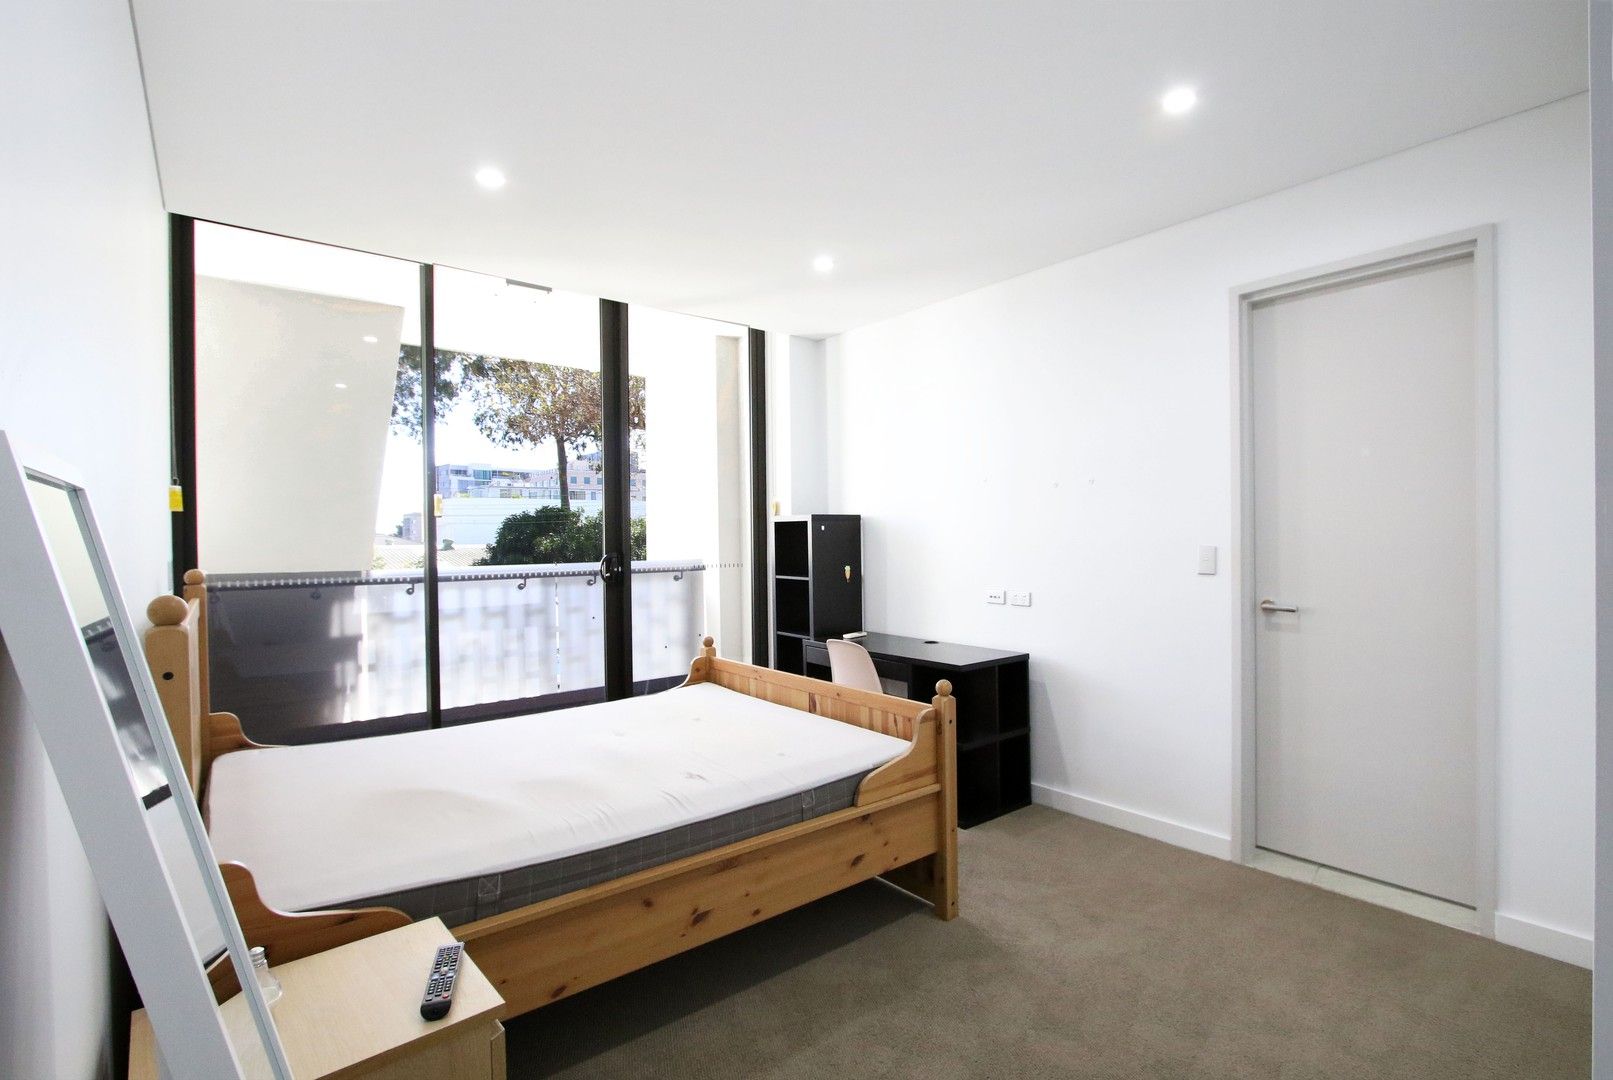 2 bedrooms House in 146/351 George Street WATERLOO NSW, 2017